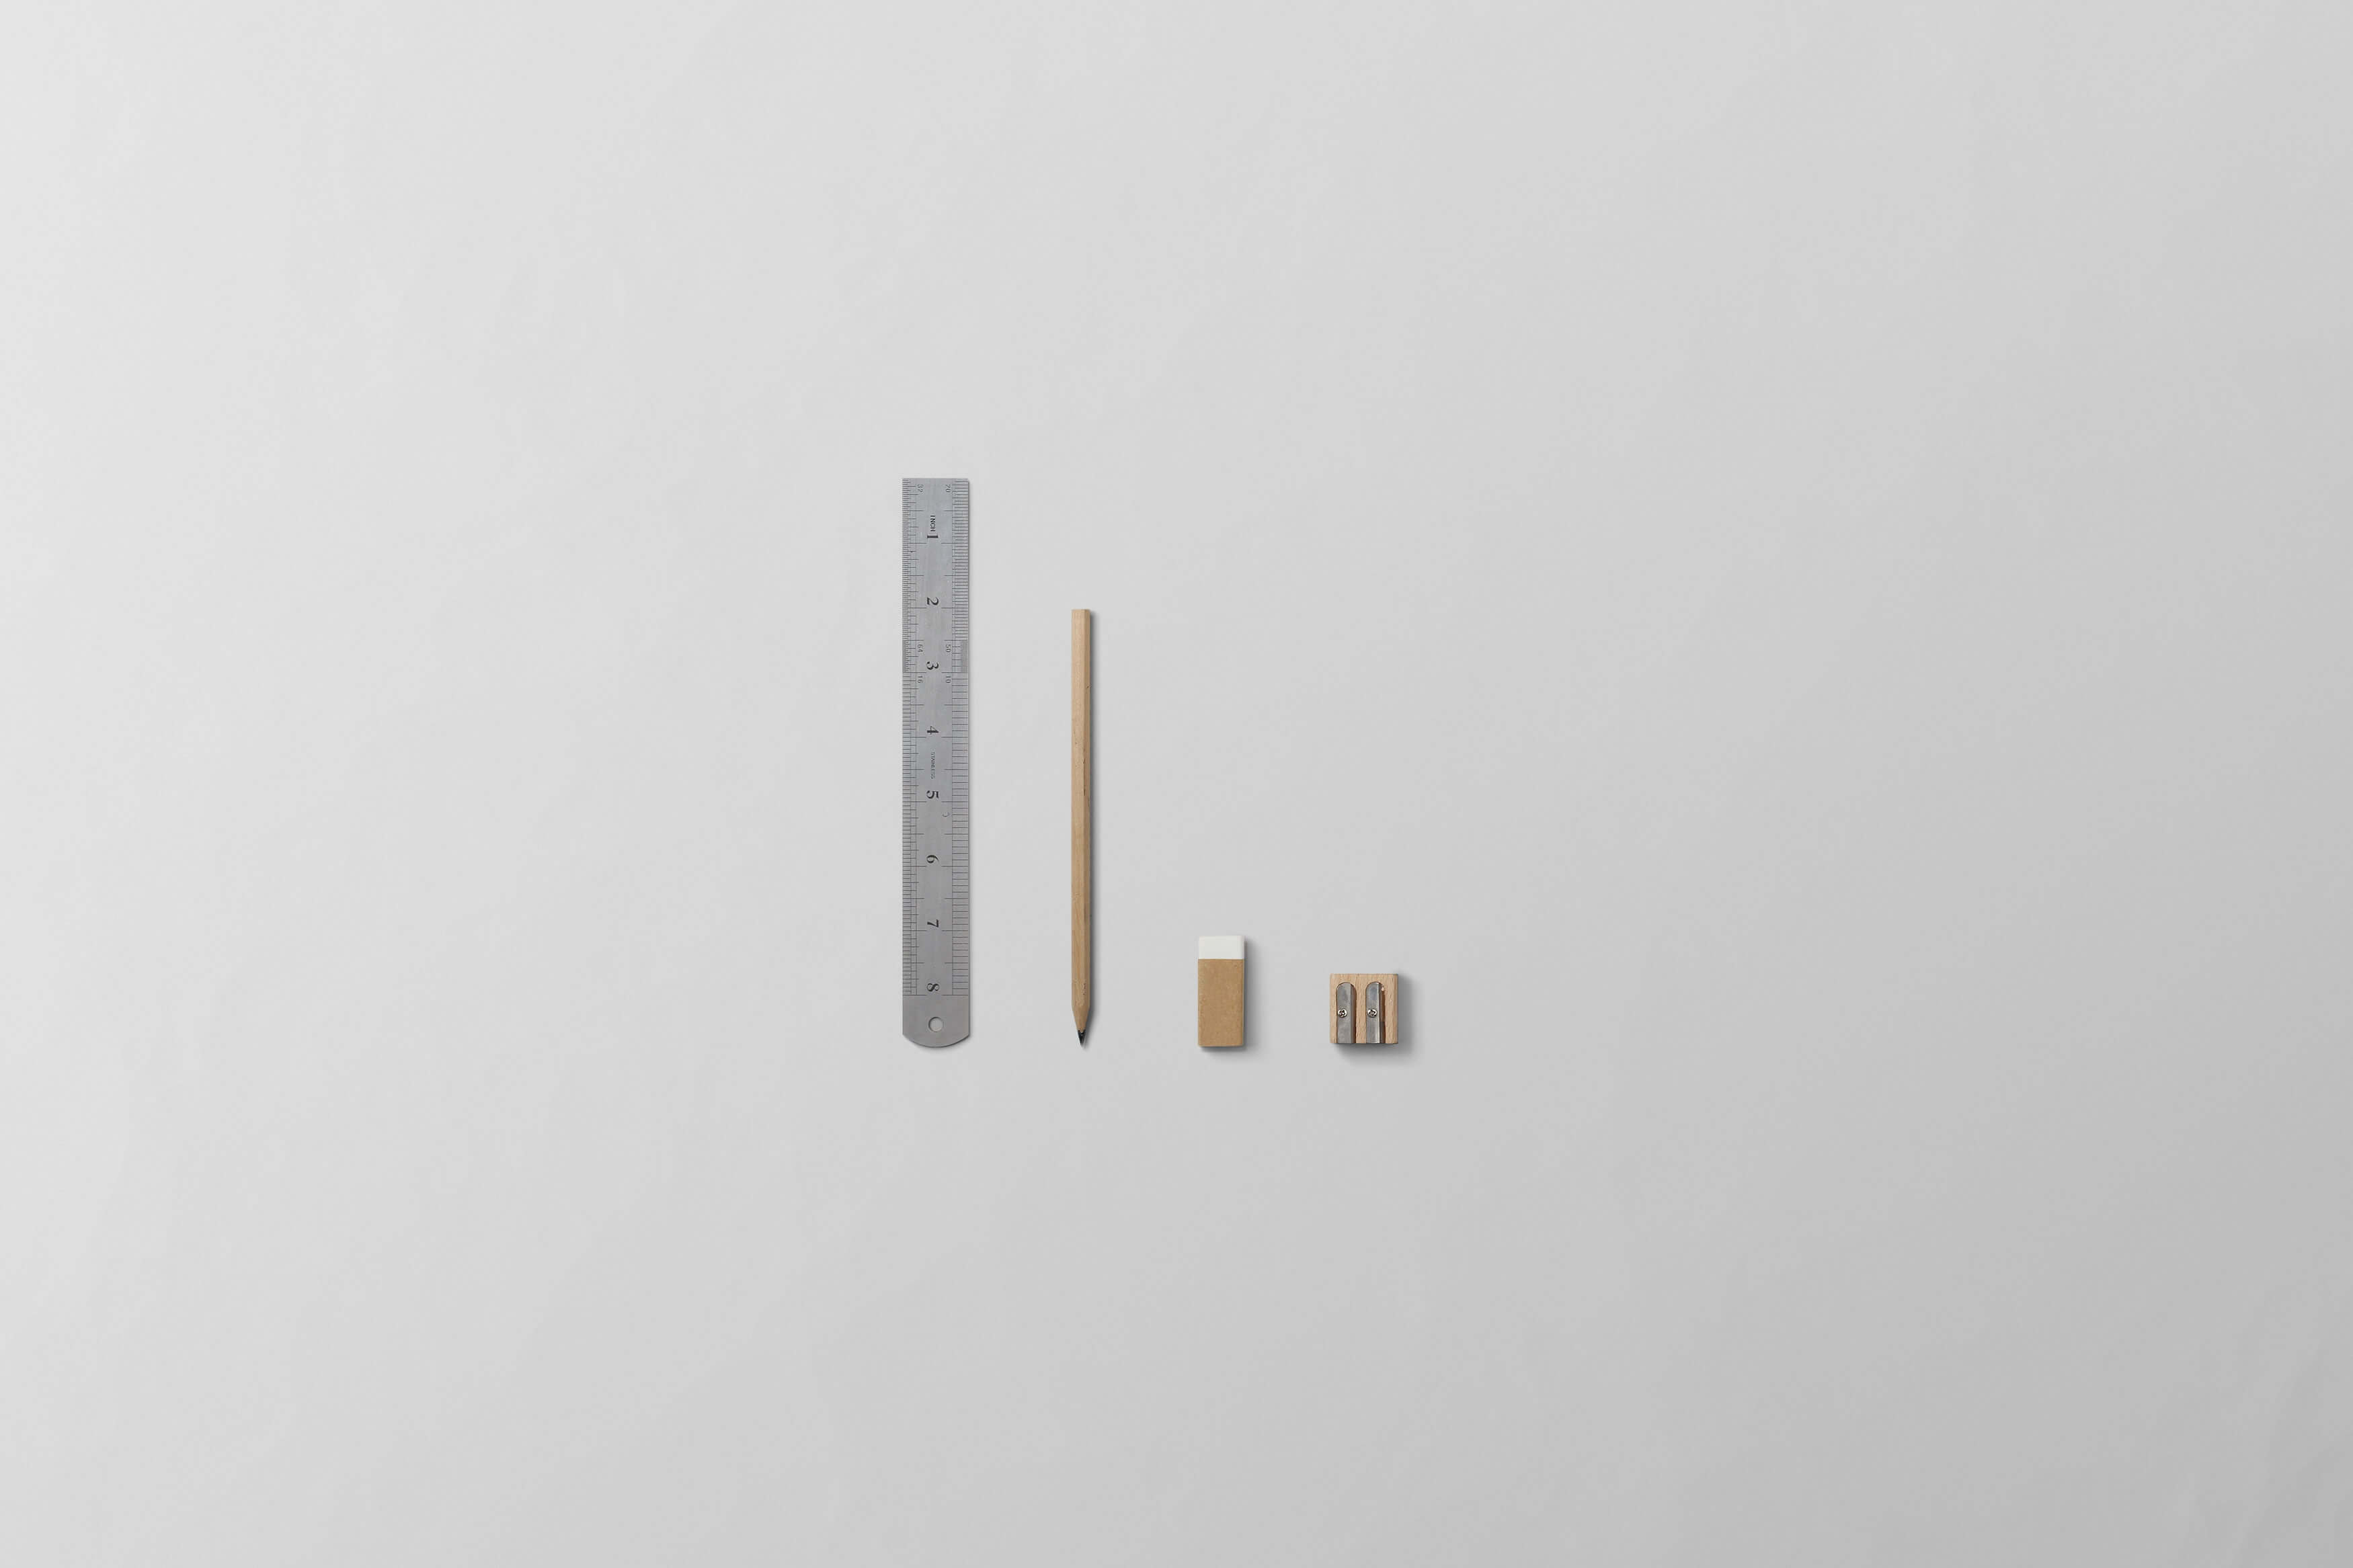 image of ruler, pencil, eraser and sharpener